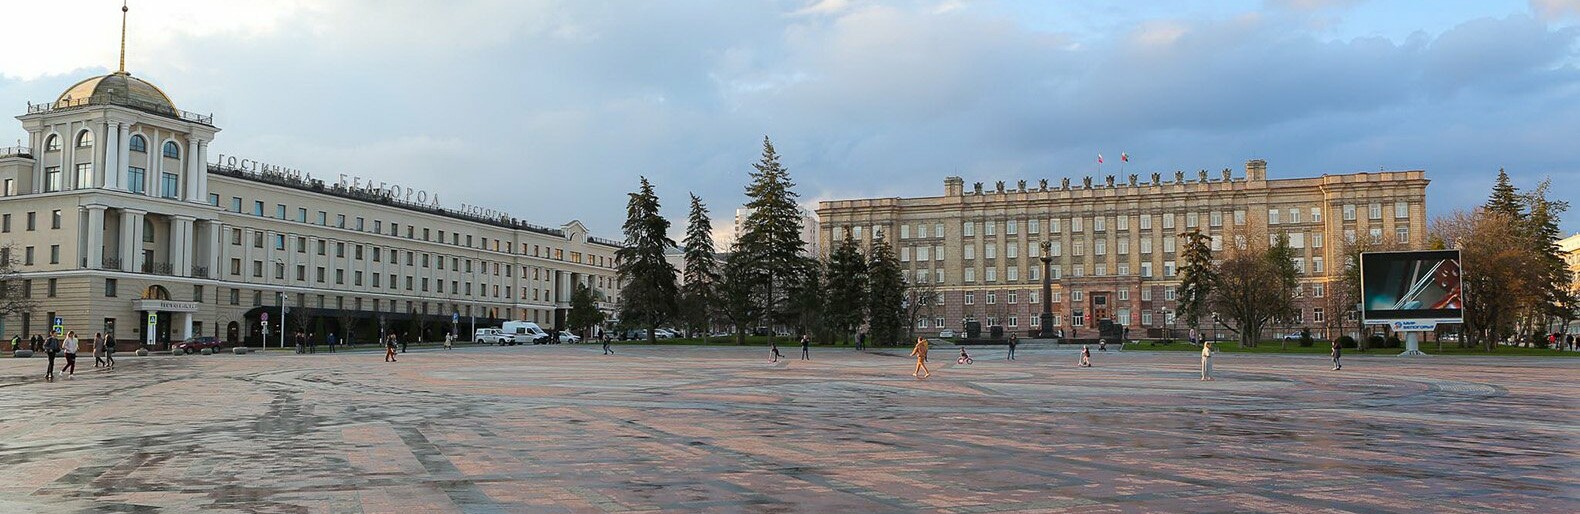 Мэр Иванов решил не устанавливать волейбольную площадку на Соборной площади в Белгороде